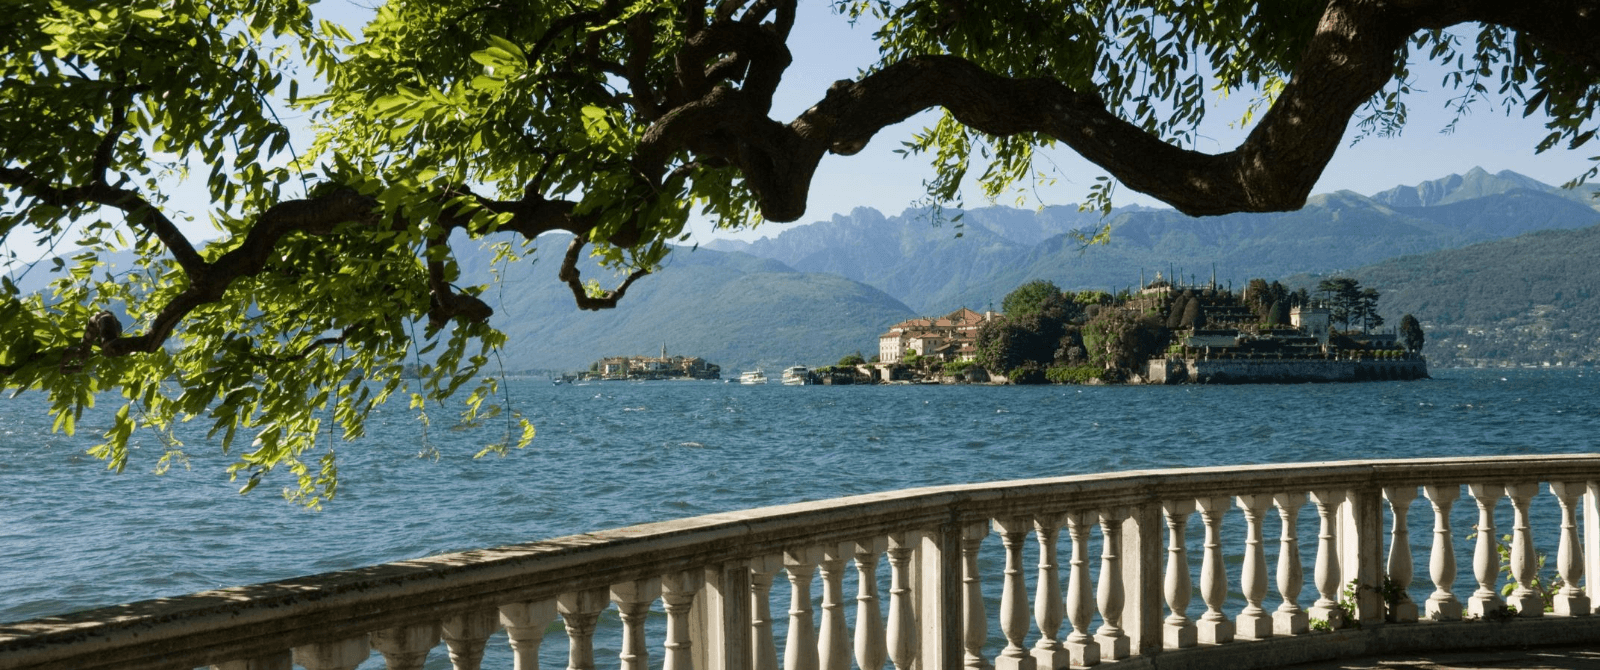 lago maggiore tour